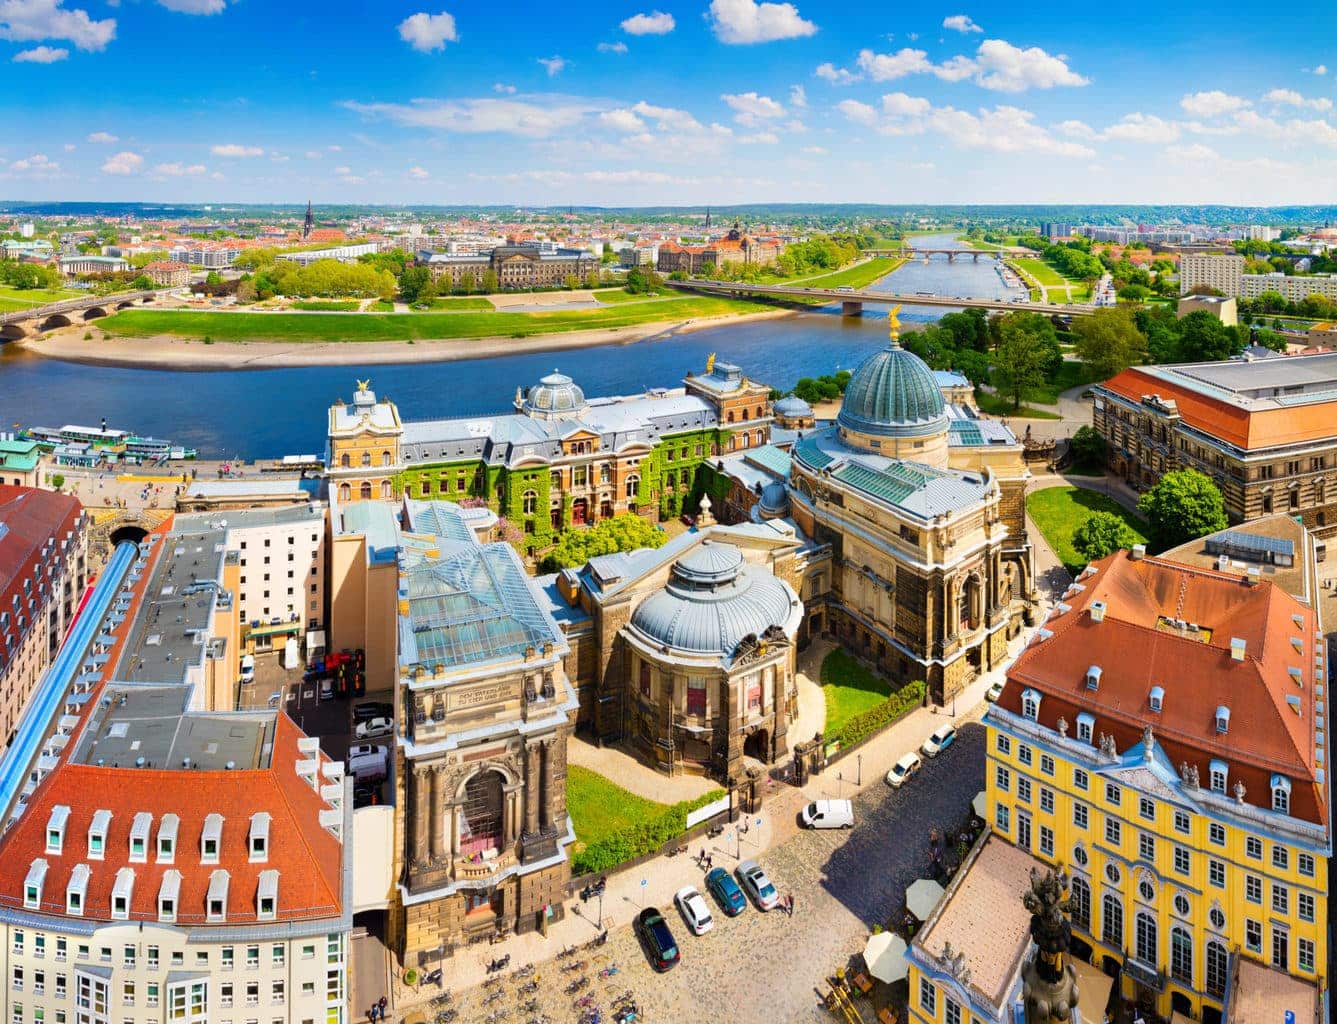 De binnenstad van Dresden met musea en monumenten is prachtig gelegen aan de rivier Elbe